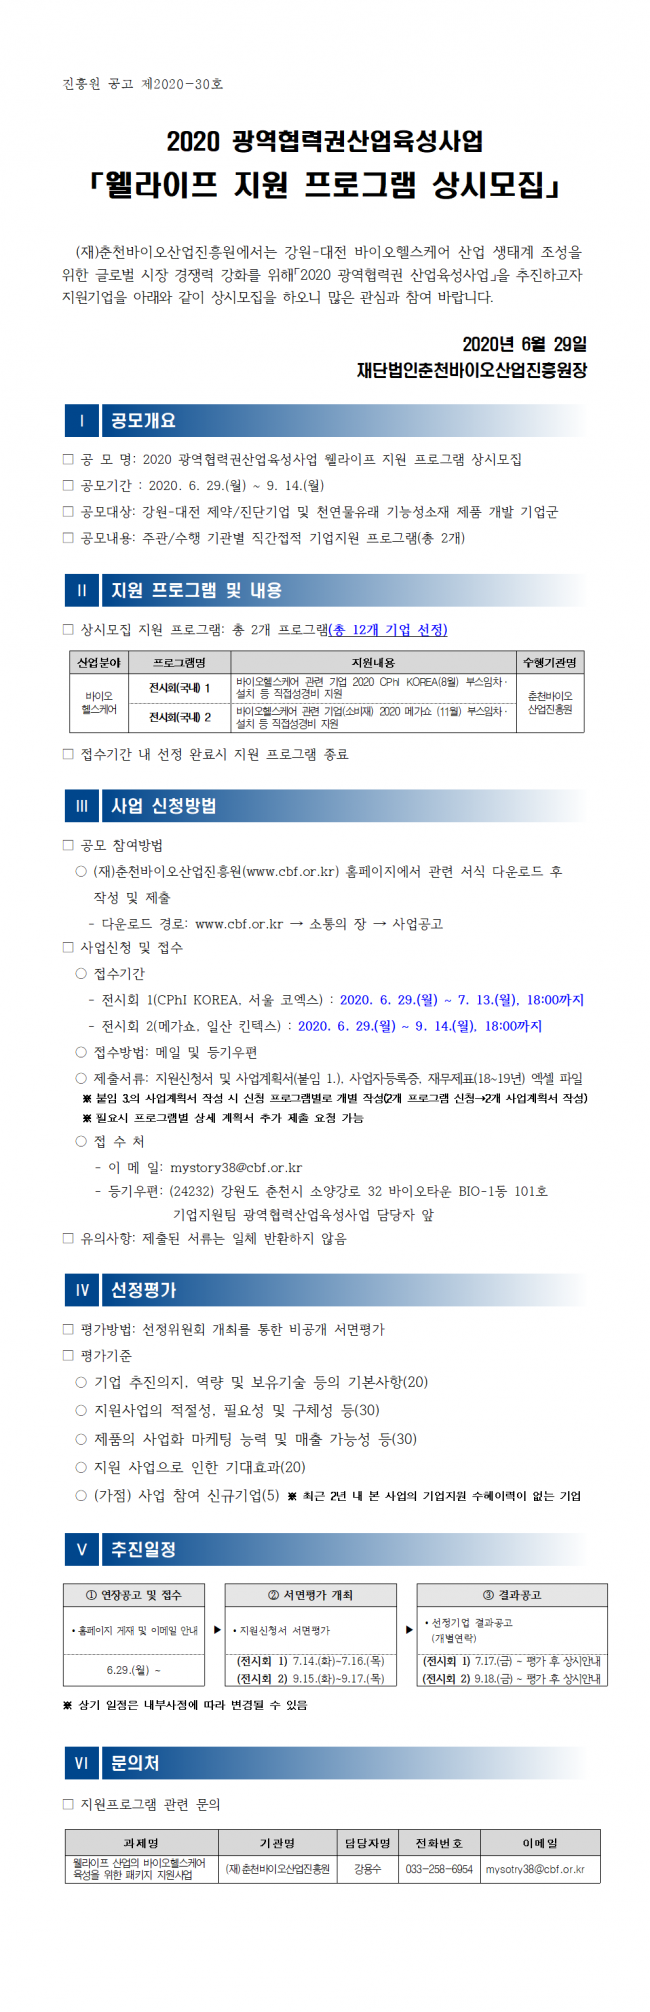 2020 광역협력권산업육성사업 기업지원 프로그램 상시모집 공모_공고문(안).png